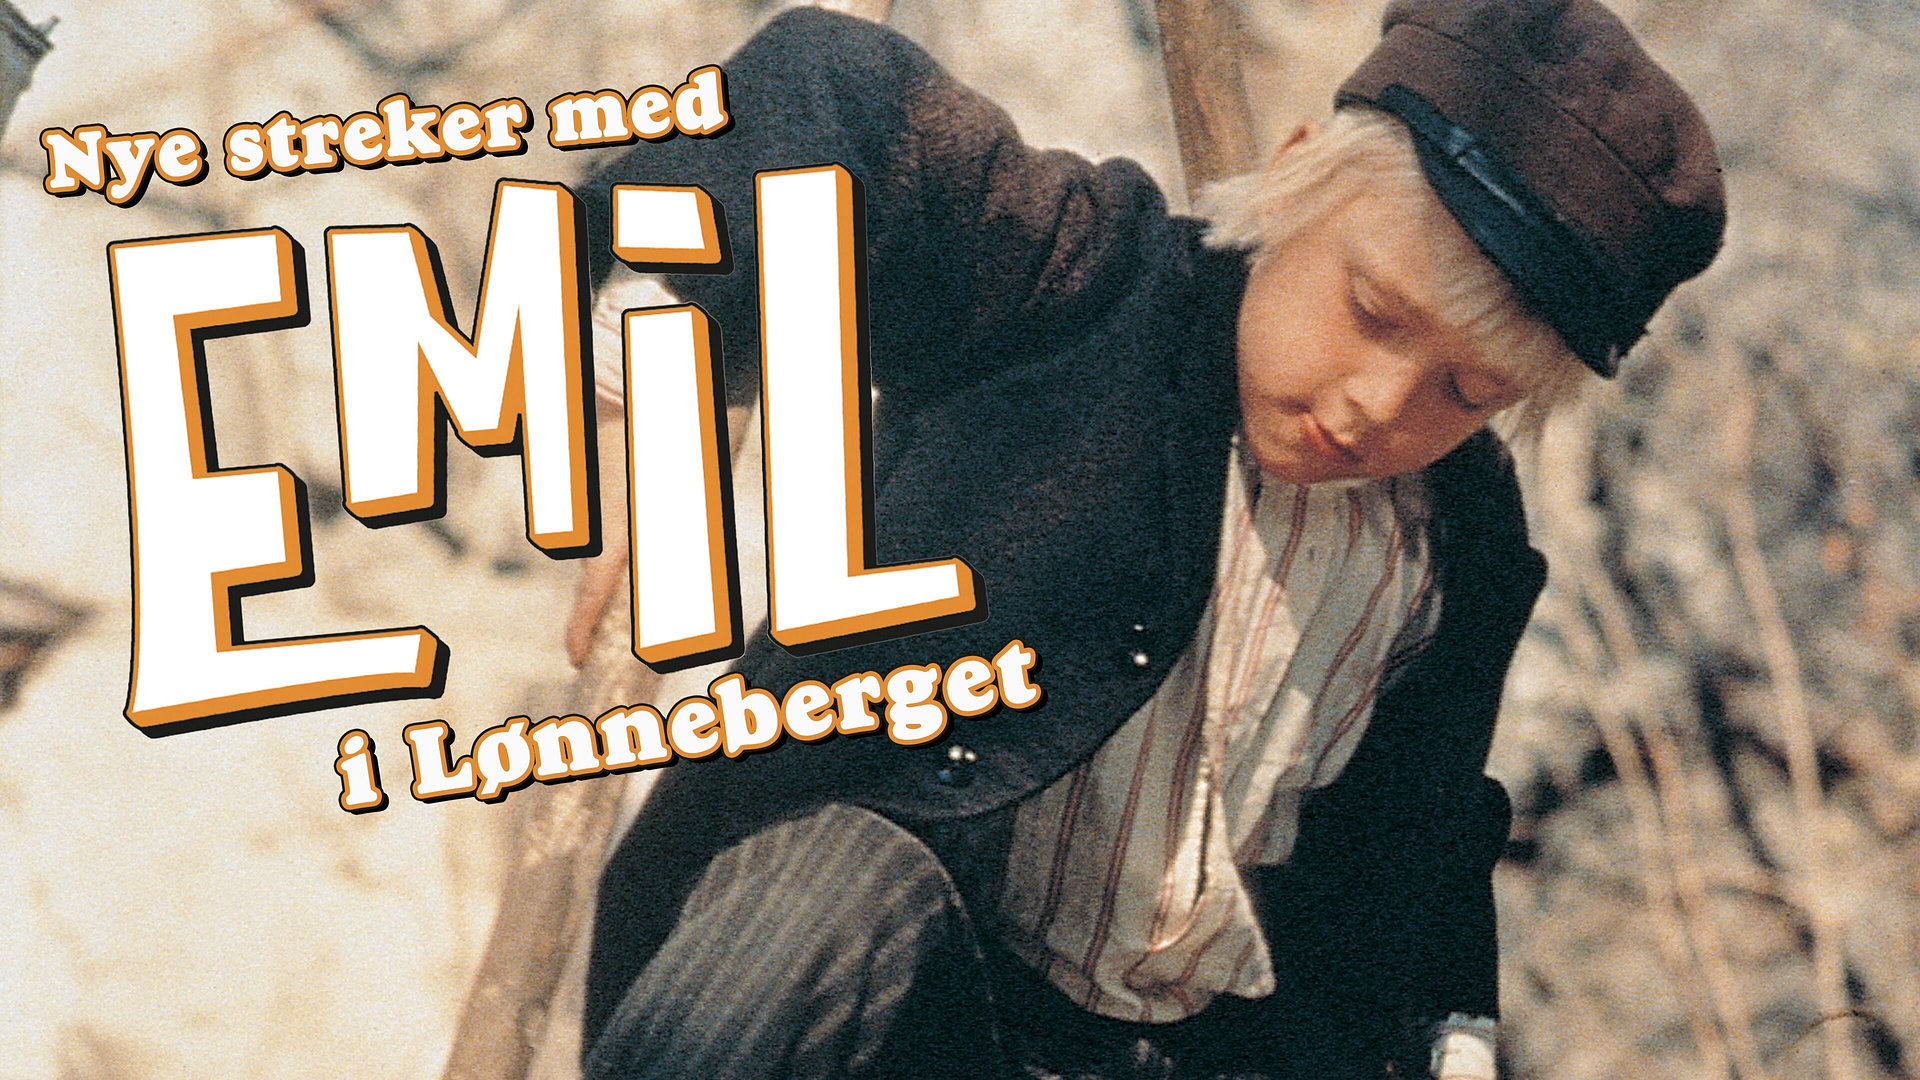 Nye streker med Emil i Lønneberget (Original tale)